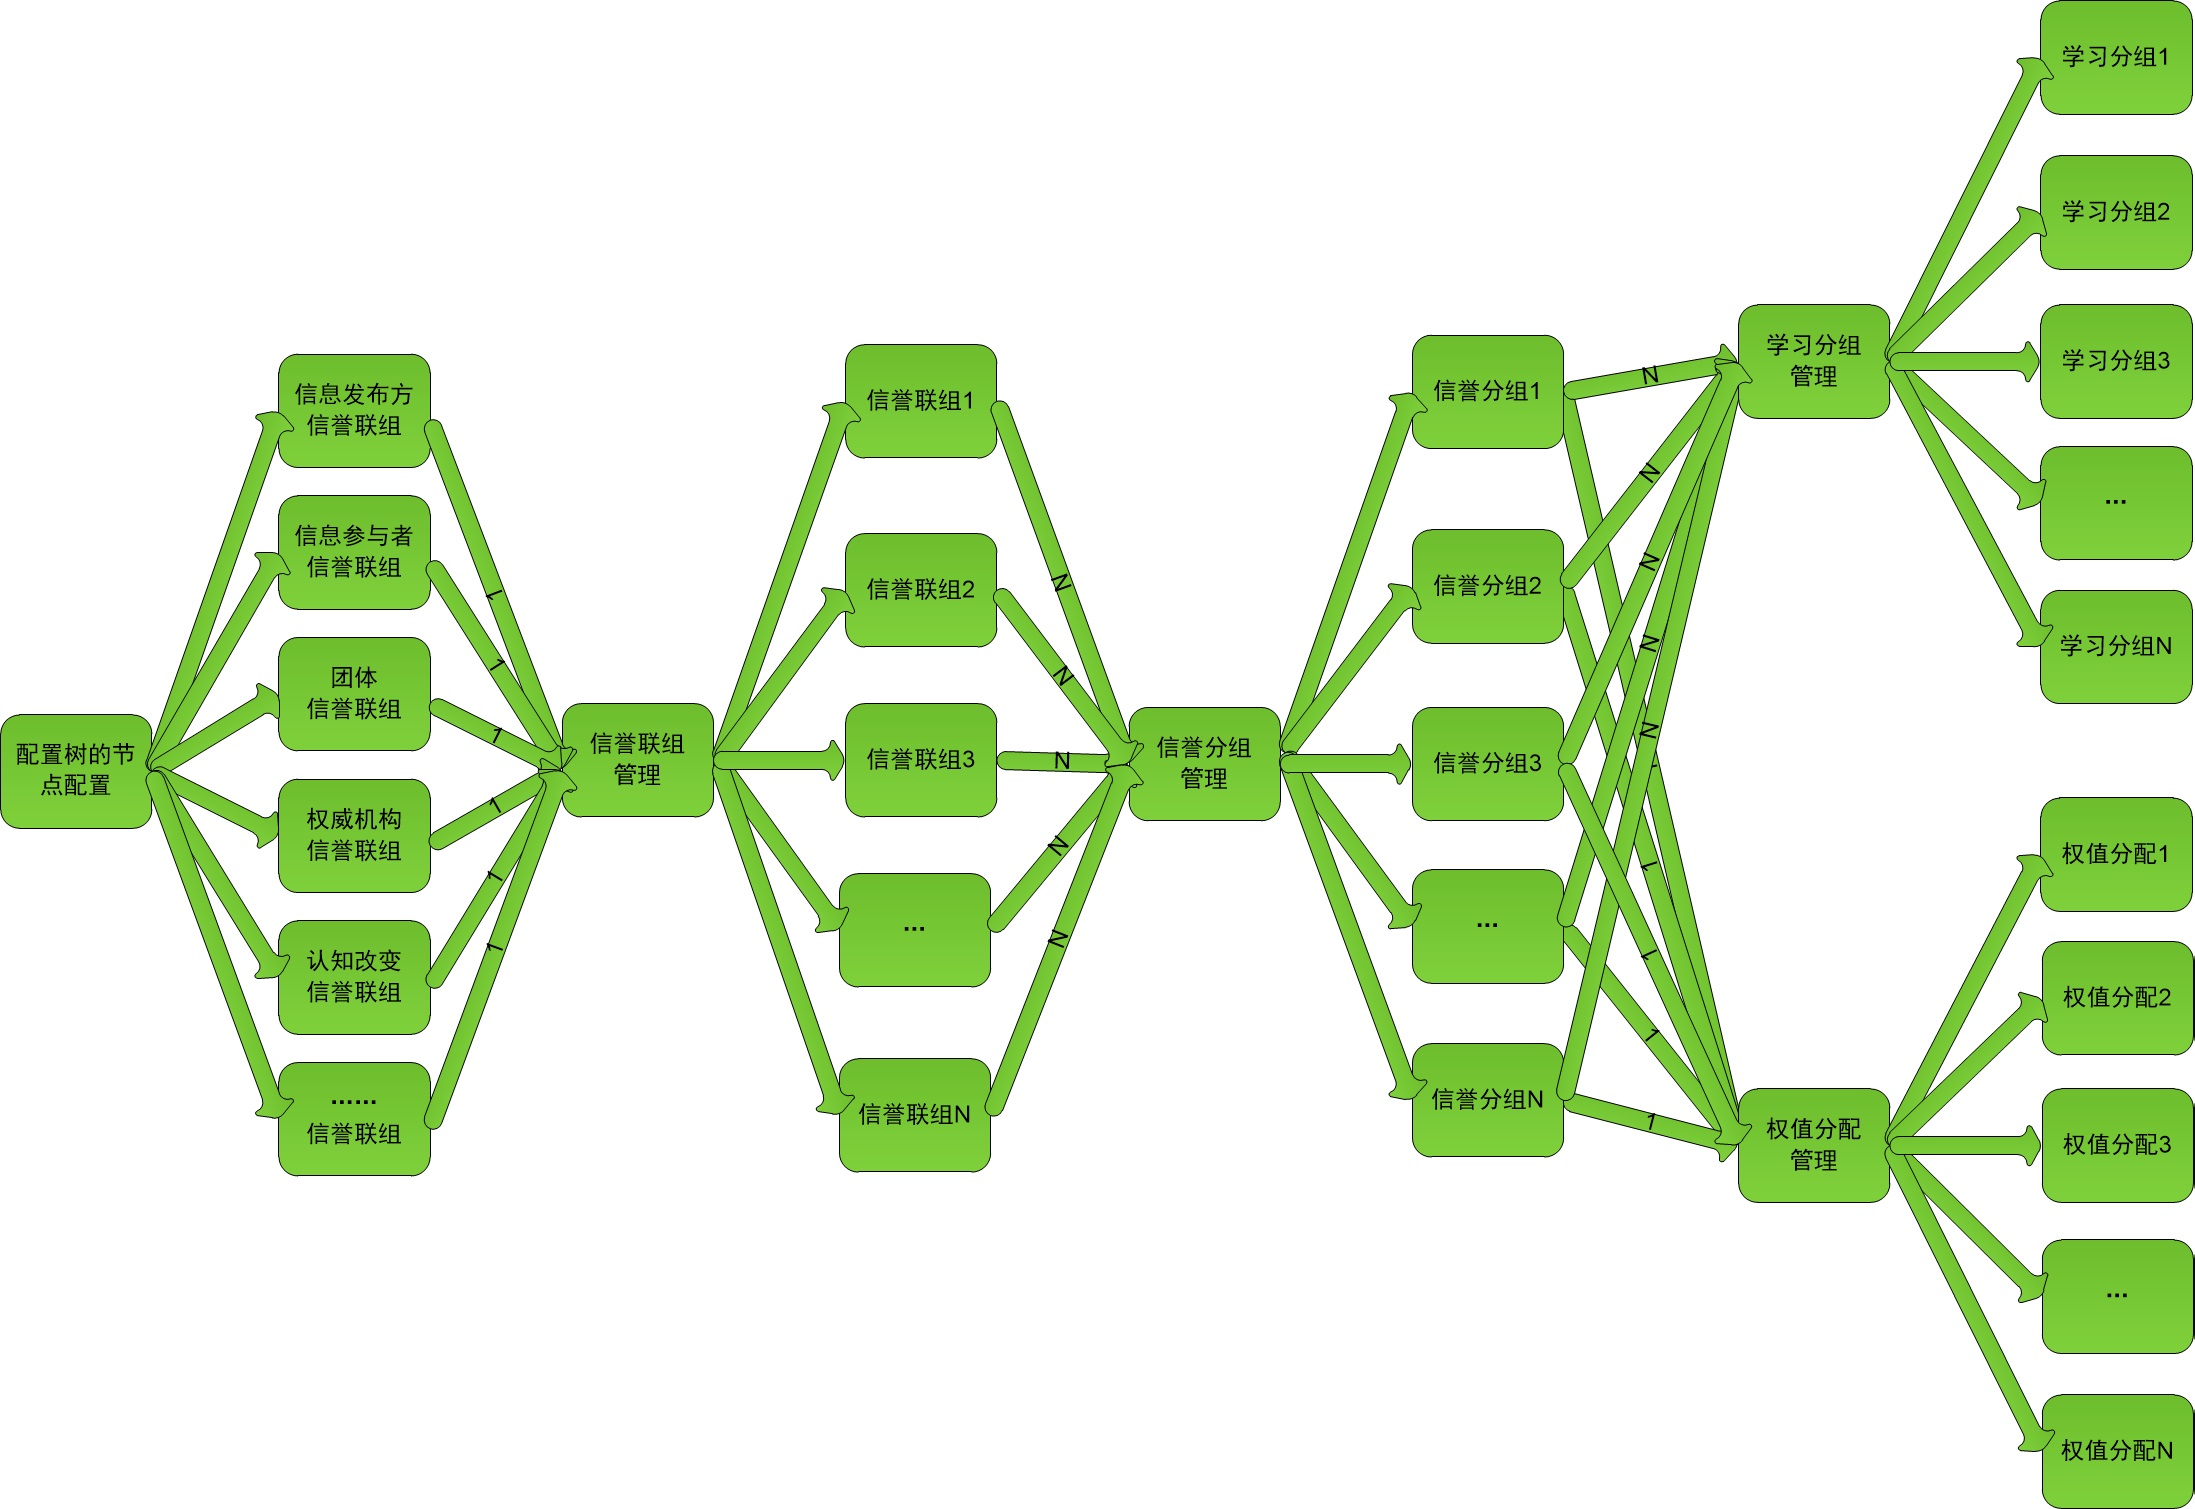 配置树的节点配置结构图